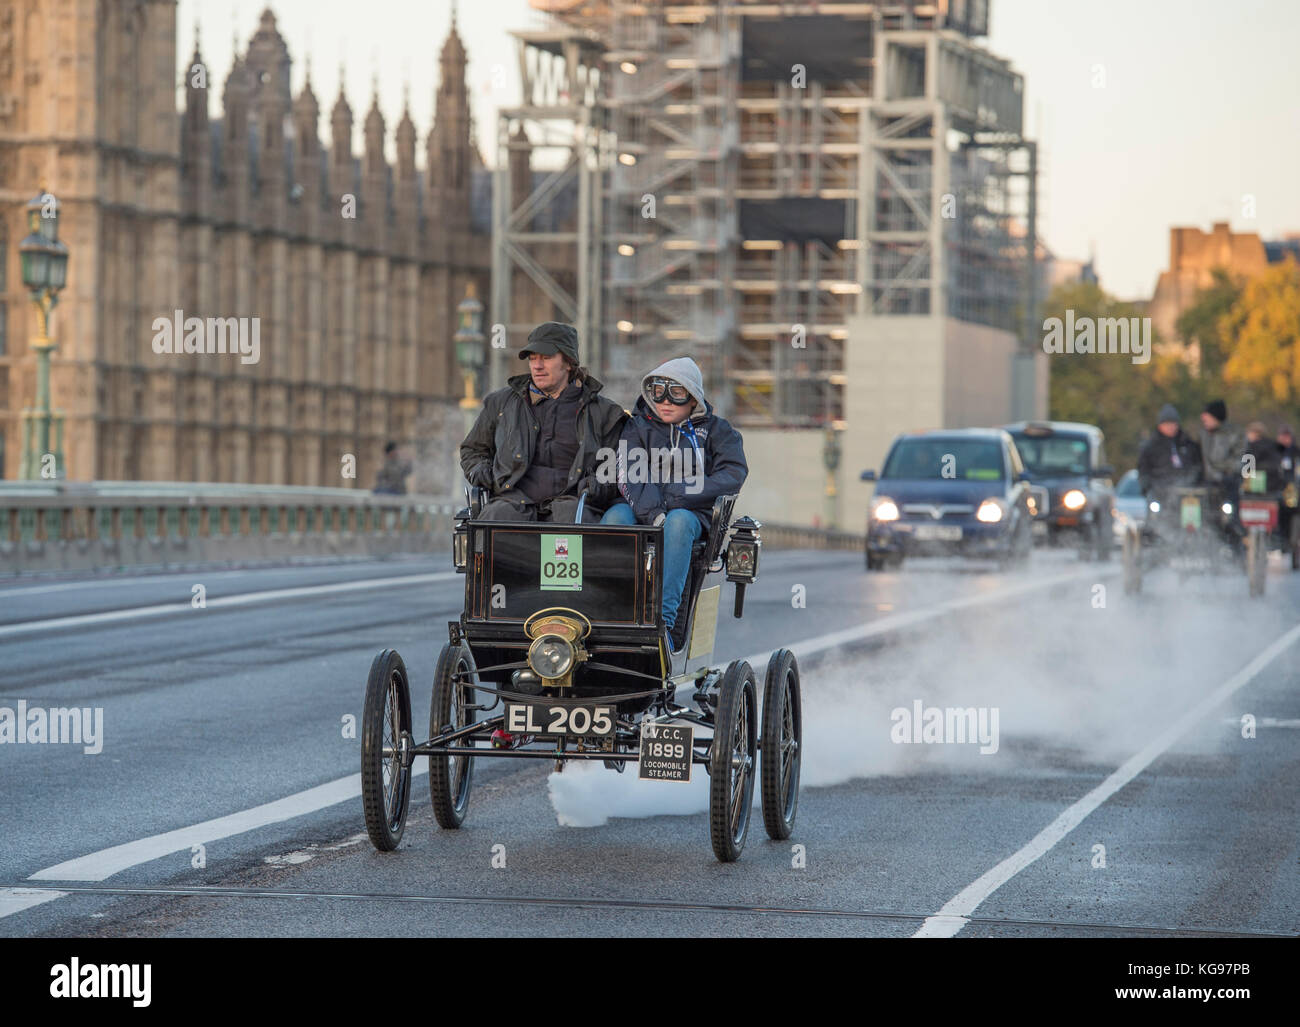 5 novembre 2017. Bonhams de Londres à Brighton, course de voitures de vétéran, la plus longue course automobile au monde, 1899 Locomobile Steam, Westminster Bridge. Banque D'Images